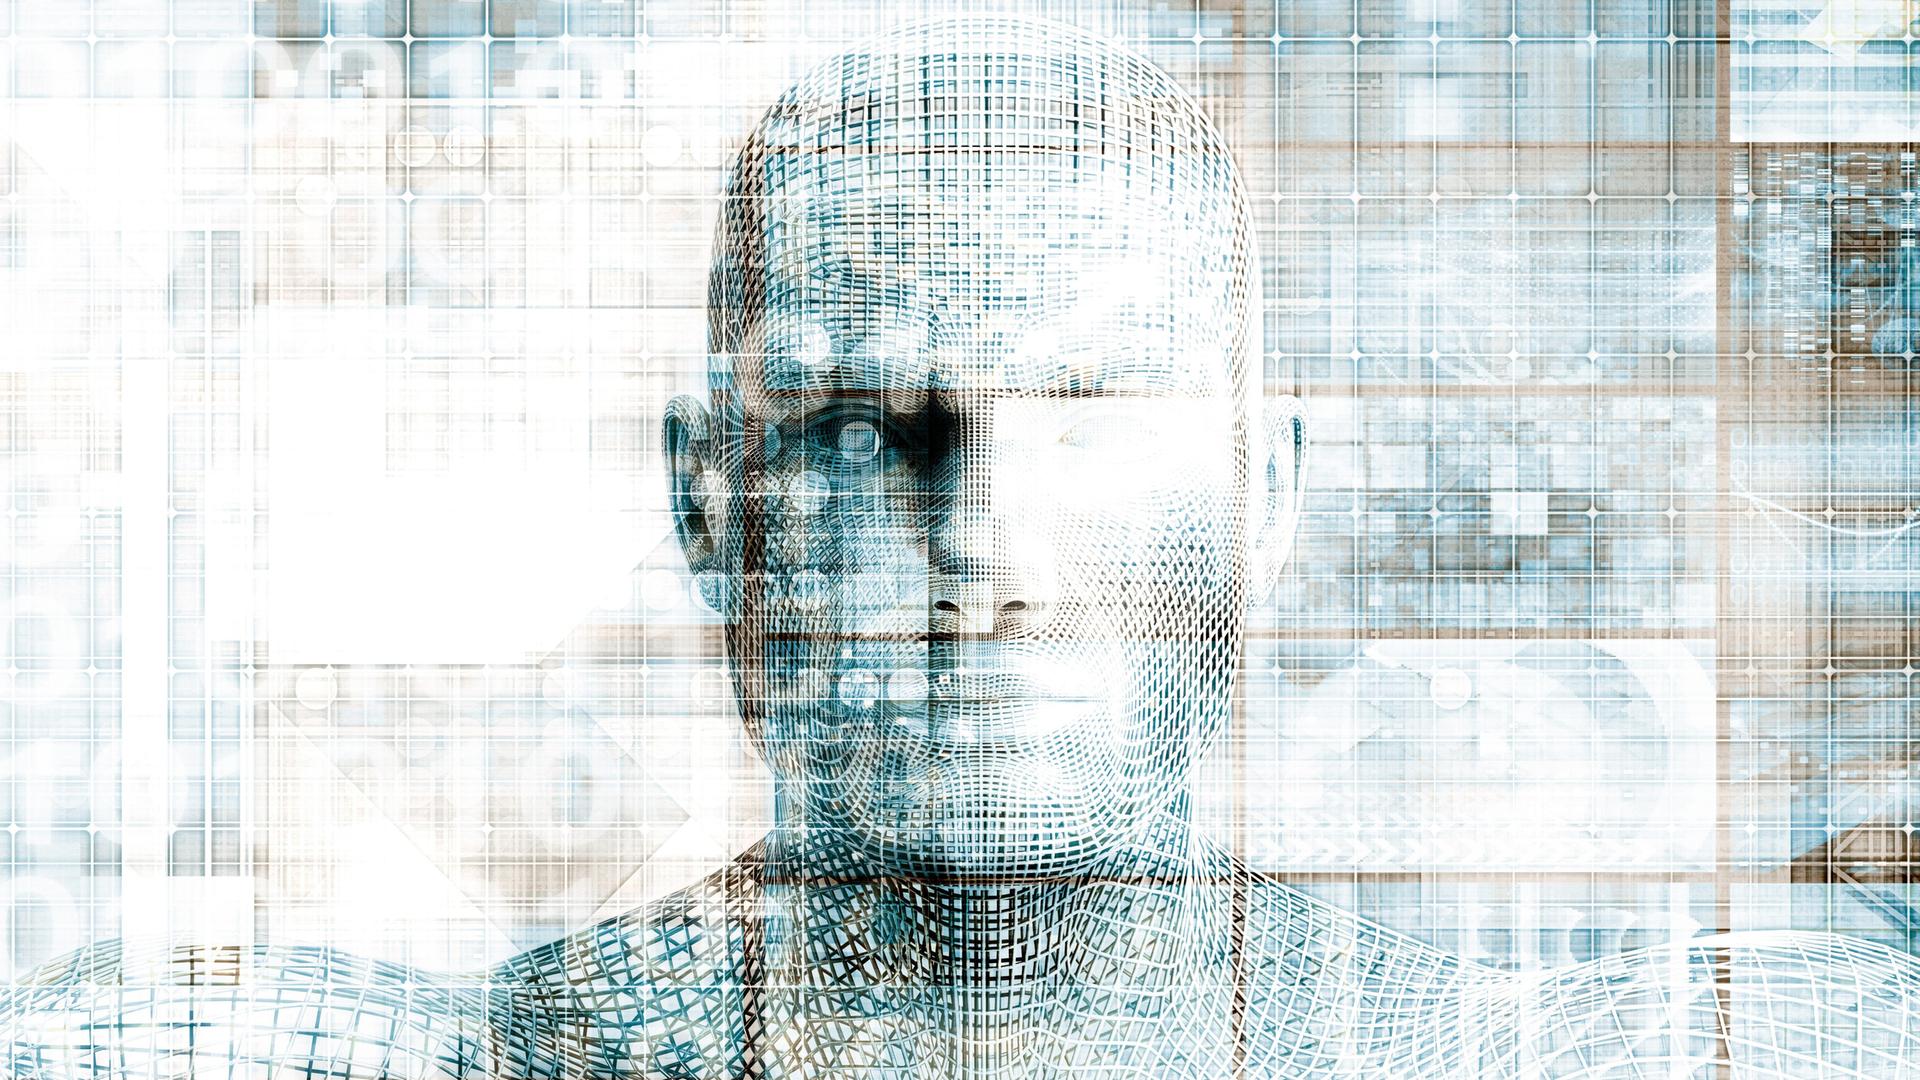 In technoiden Strukturen zeichnet sich ein menschliches Gesicht ab.